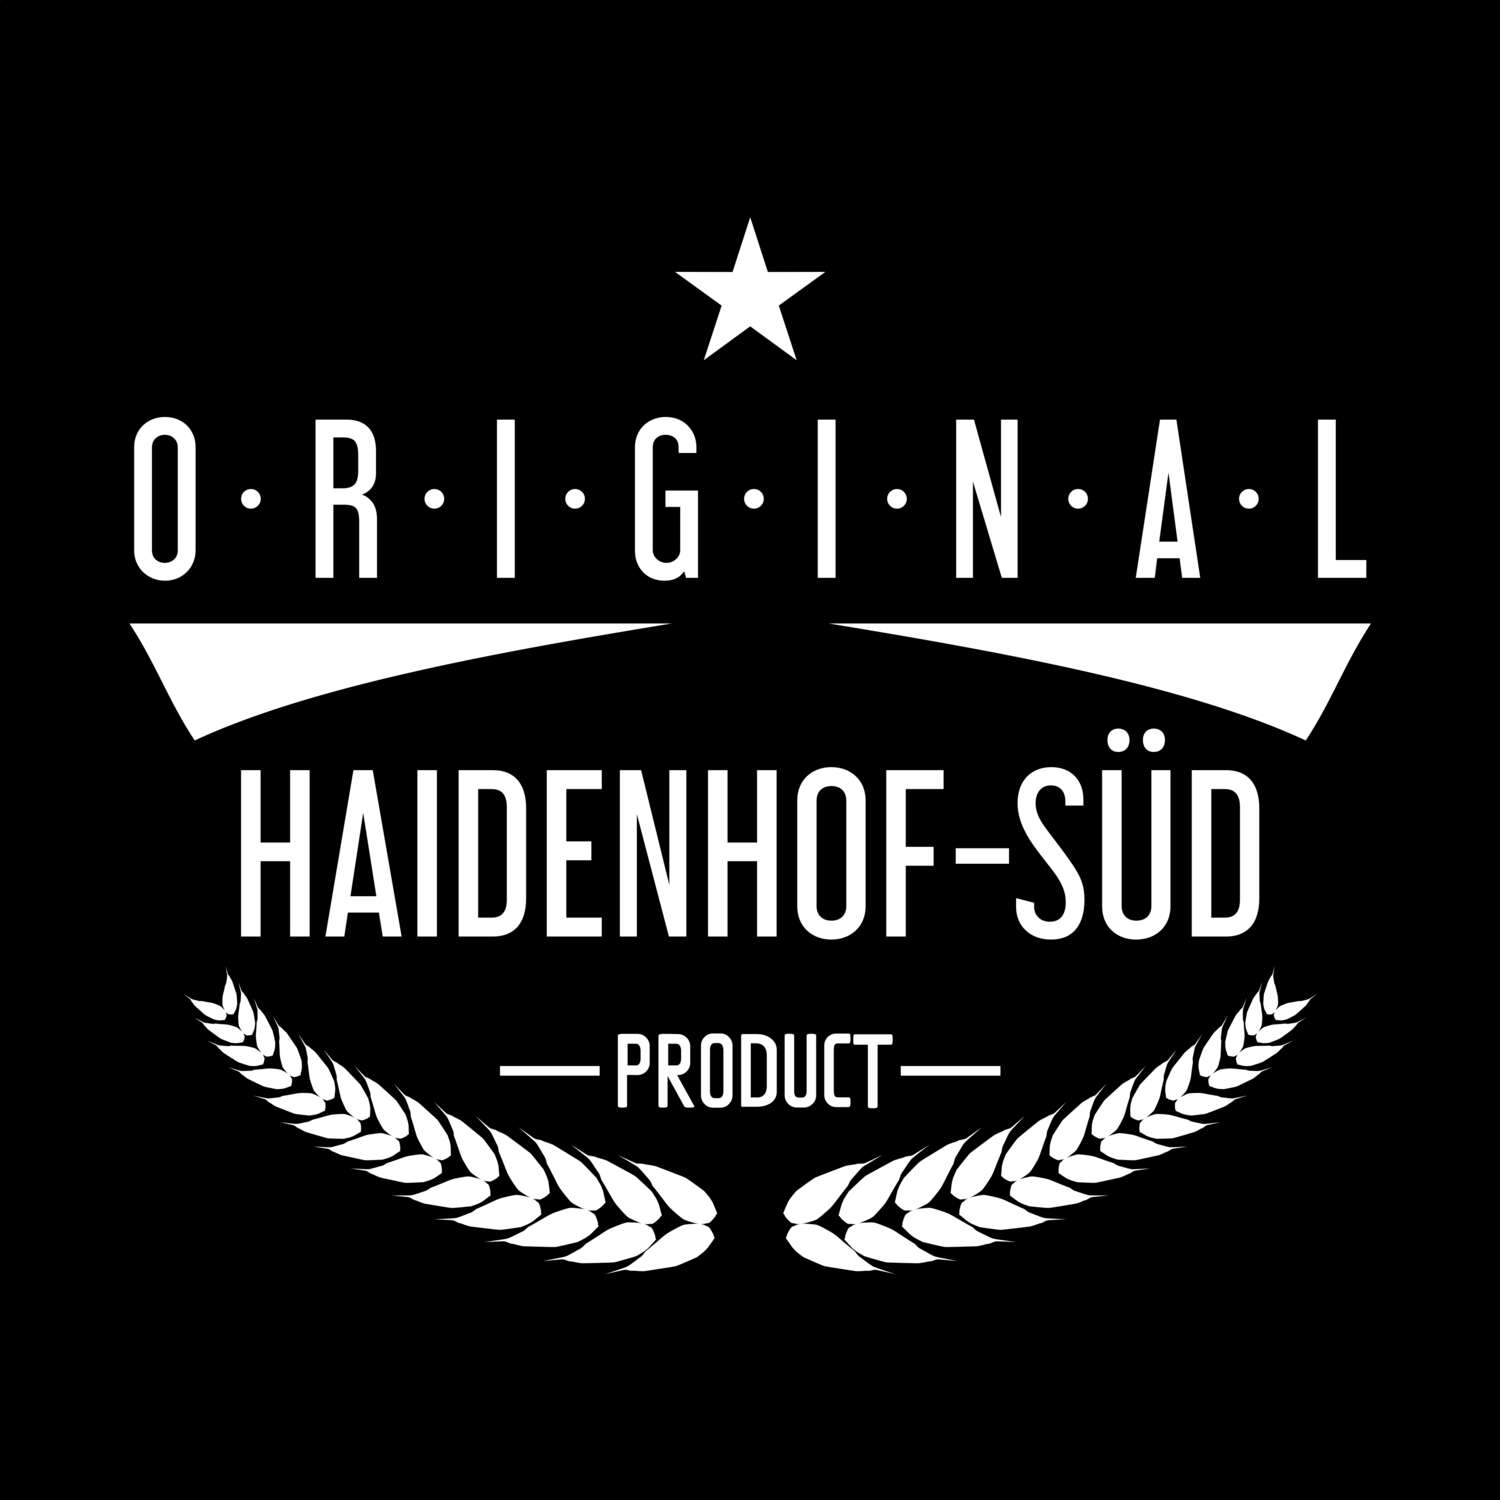 Haidenhof-Süd T-Shirt »Original Product«